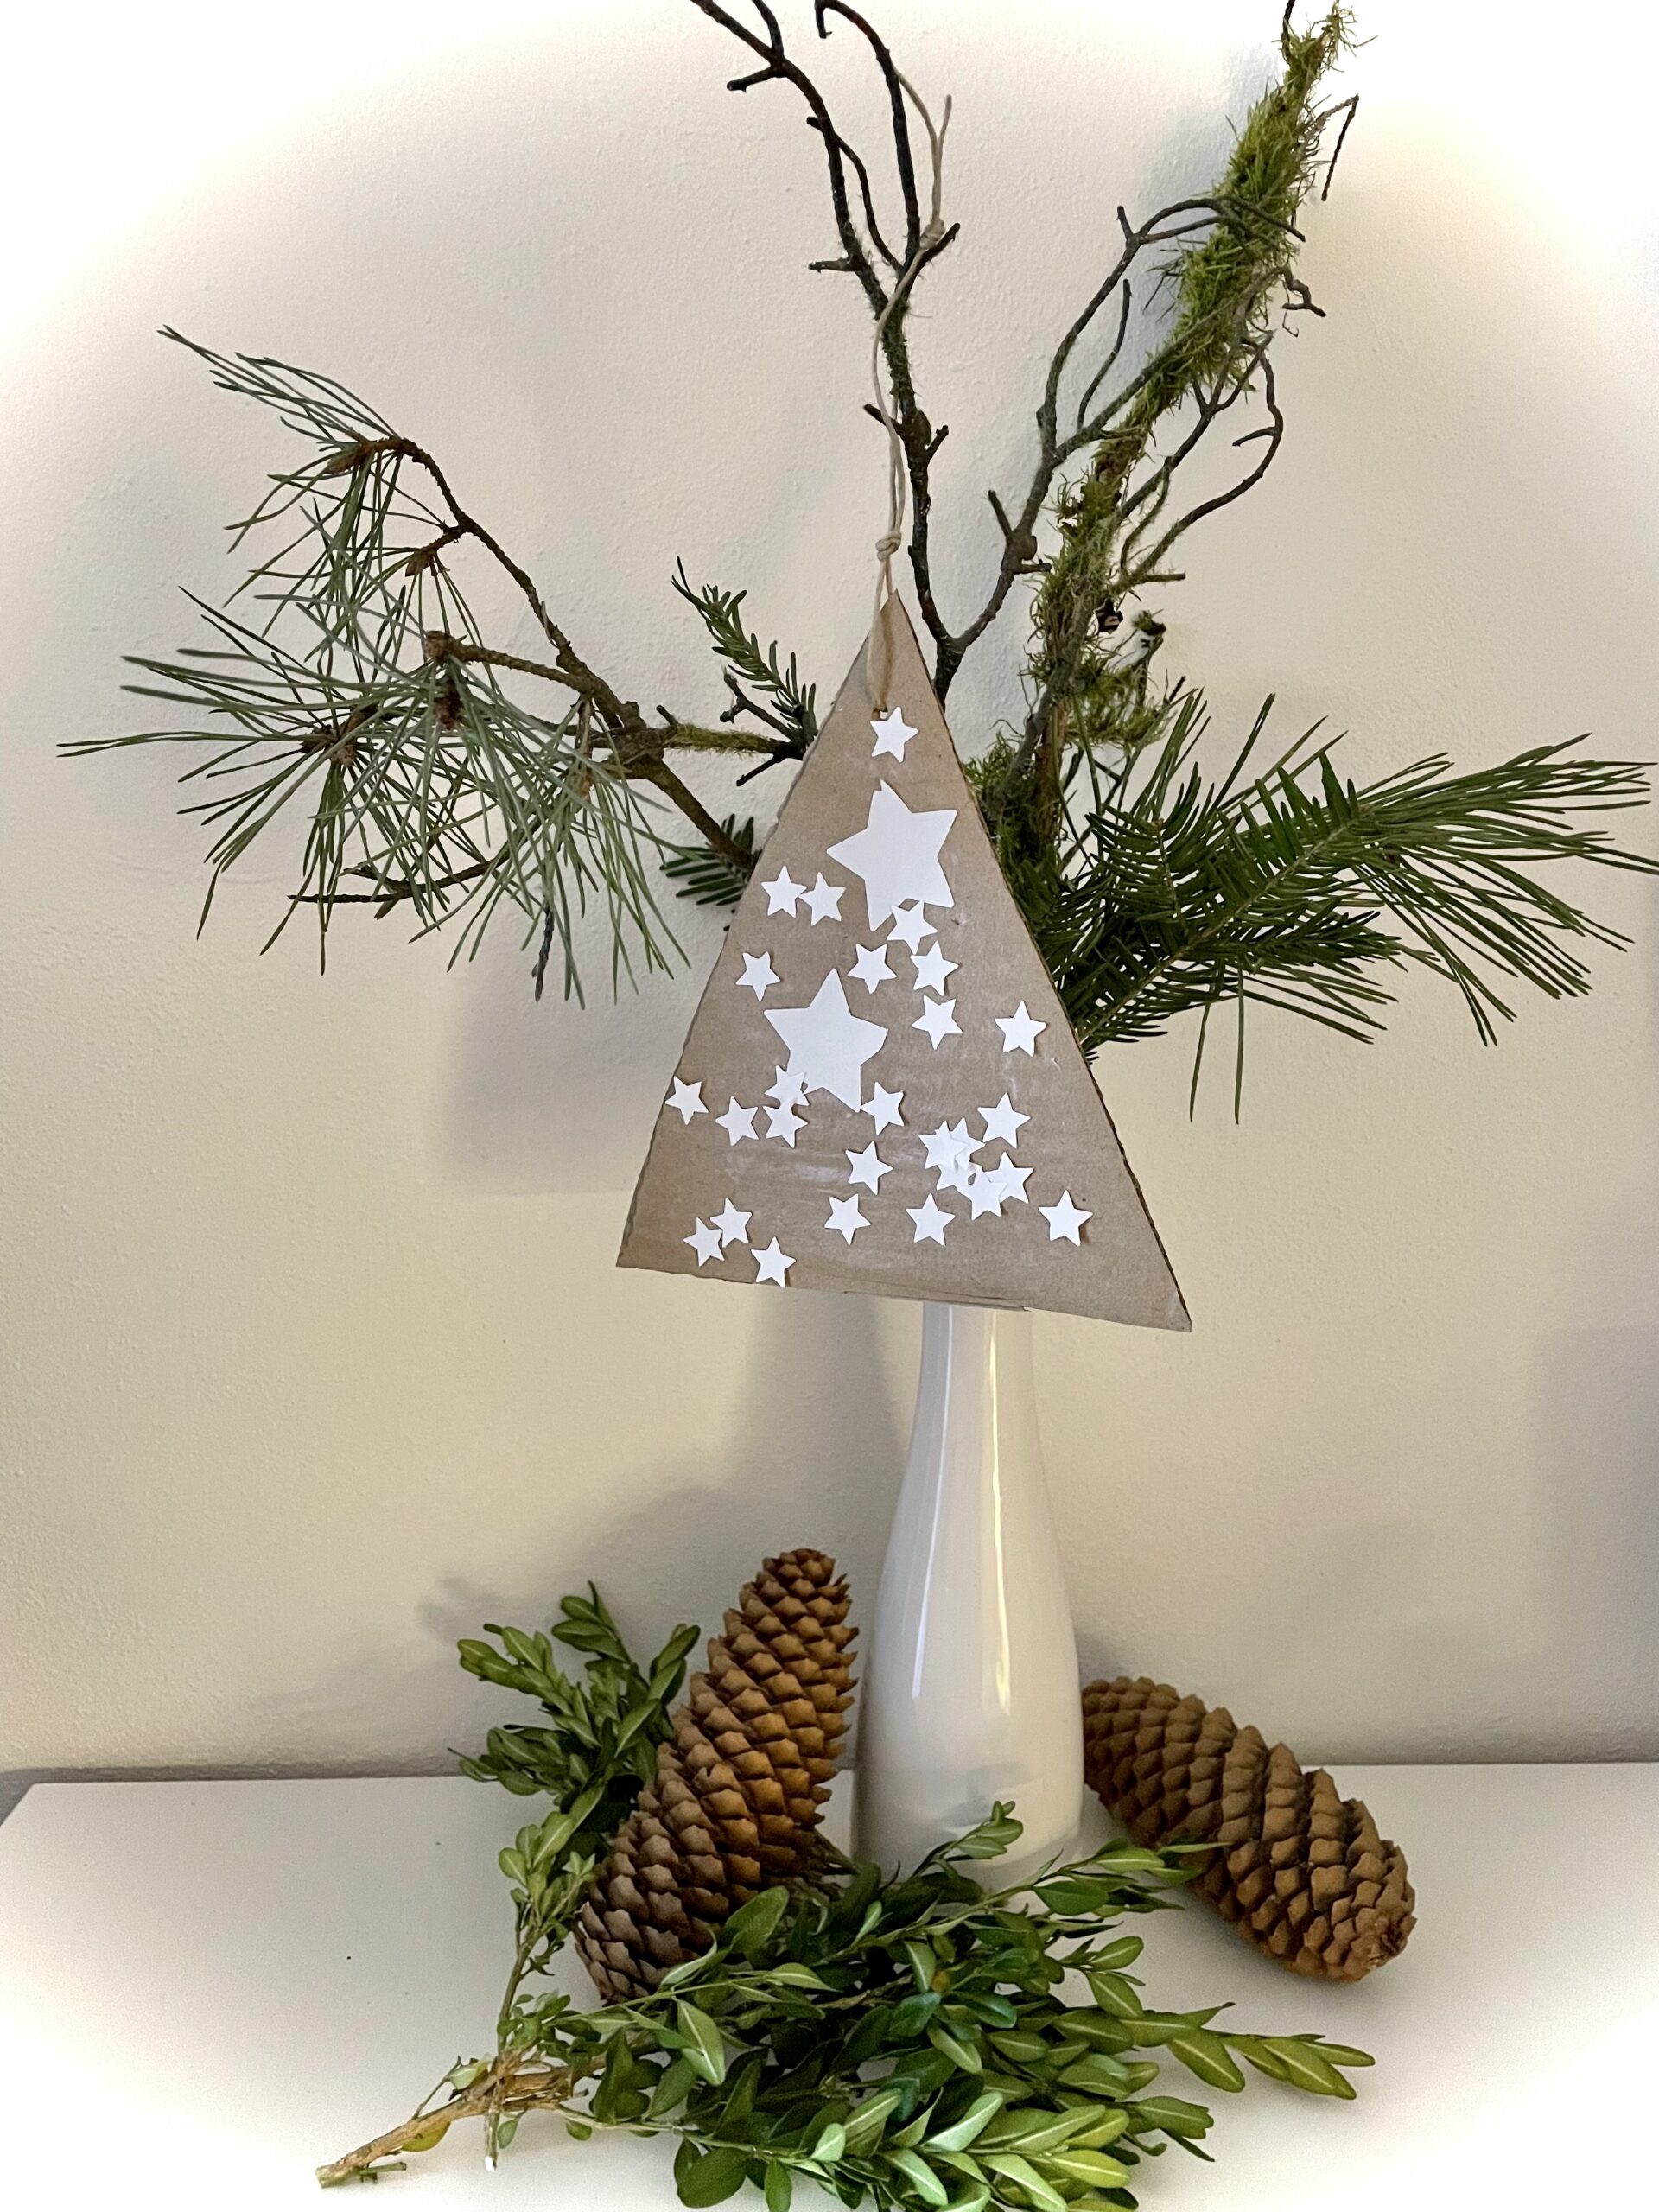 2. Bild zum Schritt 9 für das Bastel- und DIY-Abenteuer für Kinder: 'Verwendet ihr den Weihnachtsbaum aus Pappe zur Dekoration, dann klebt...'